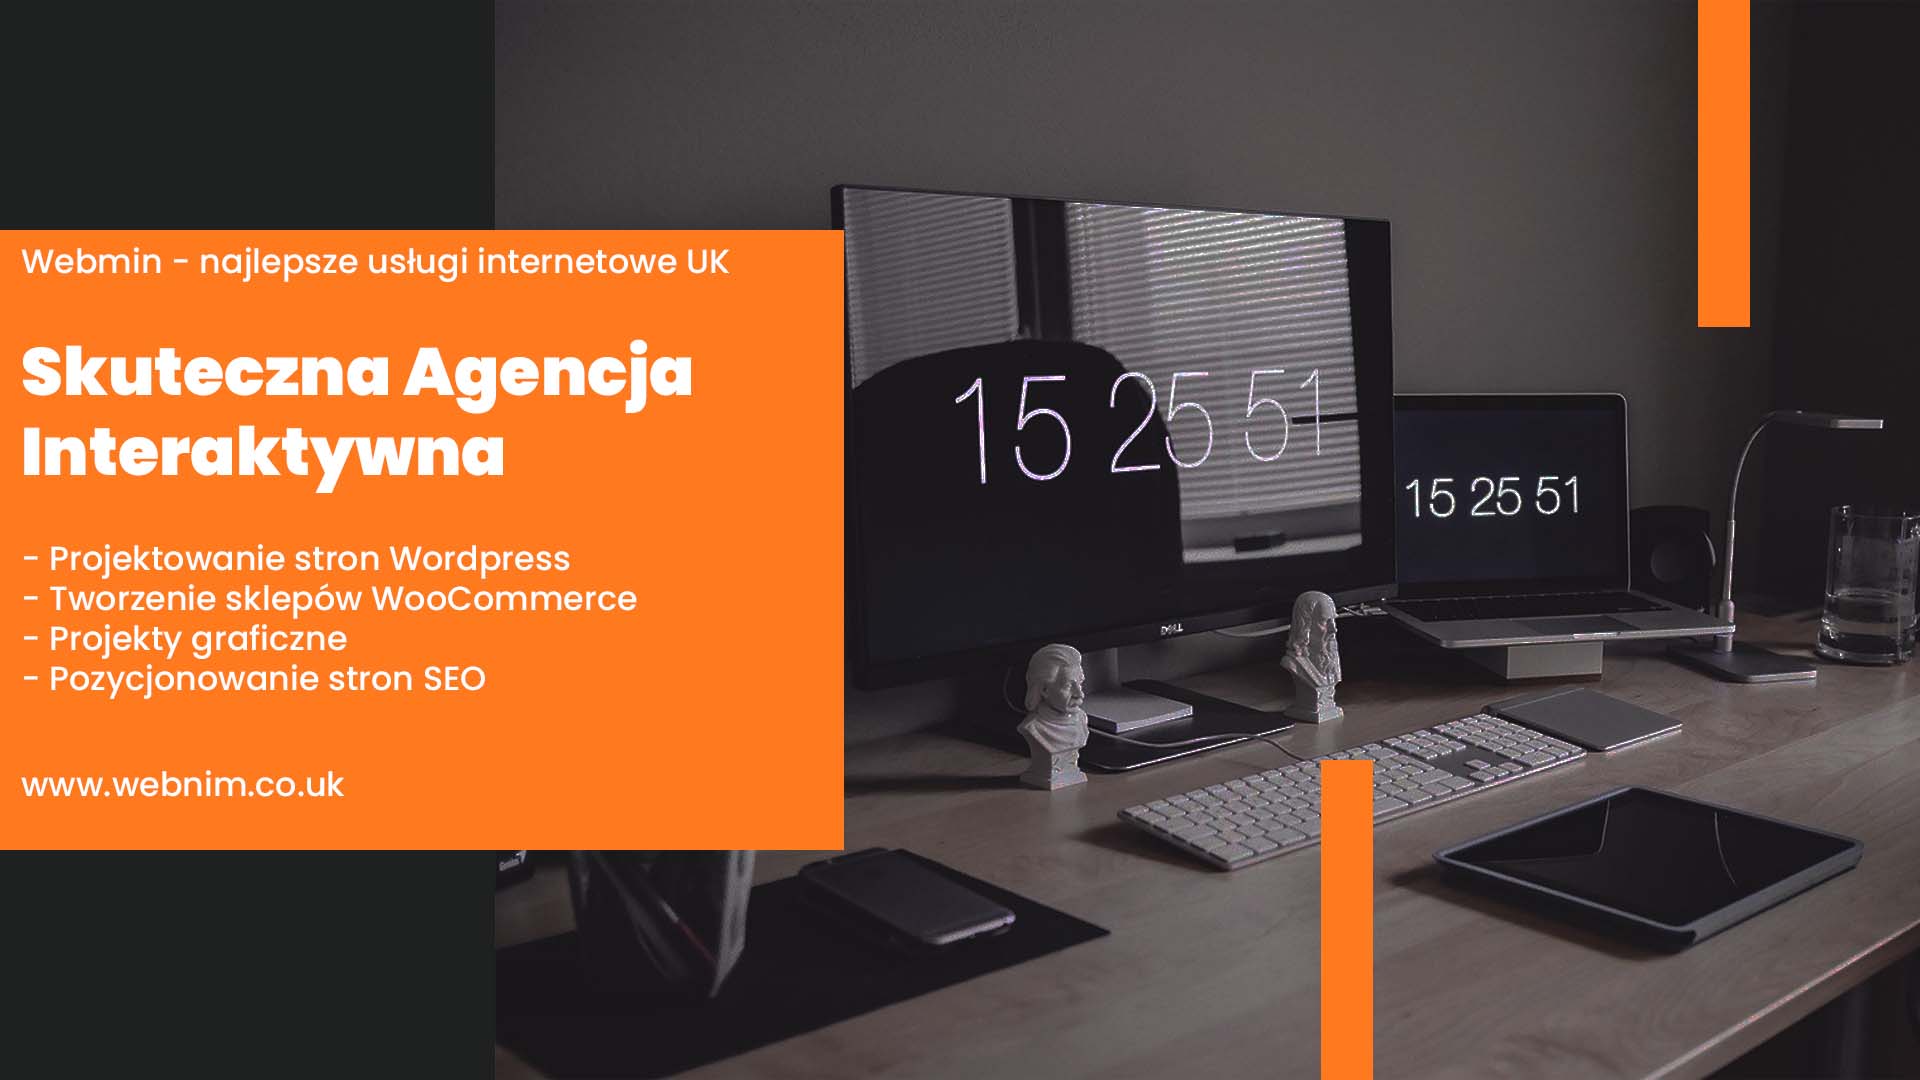 biurko z klawiaturą, laptopem, monitorem, tabletem oraz napisy na pomarańczowym kwadracie skuteczna agencja interaktywna